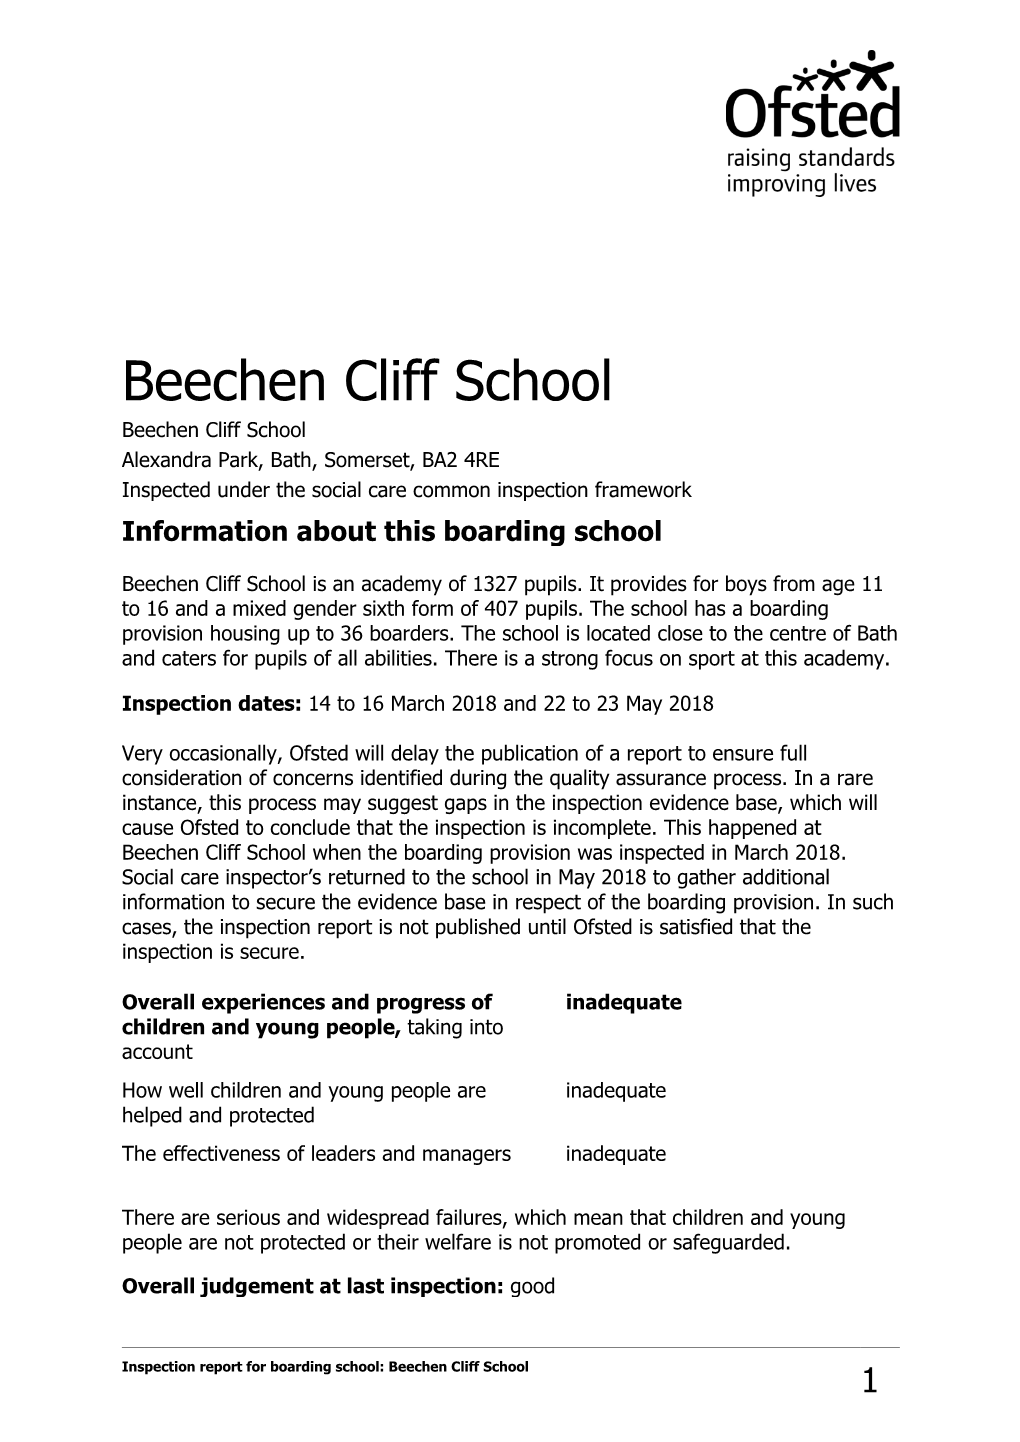 Boarding School Details